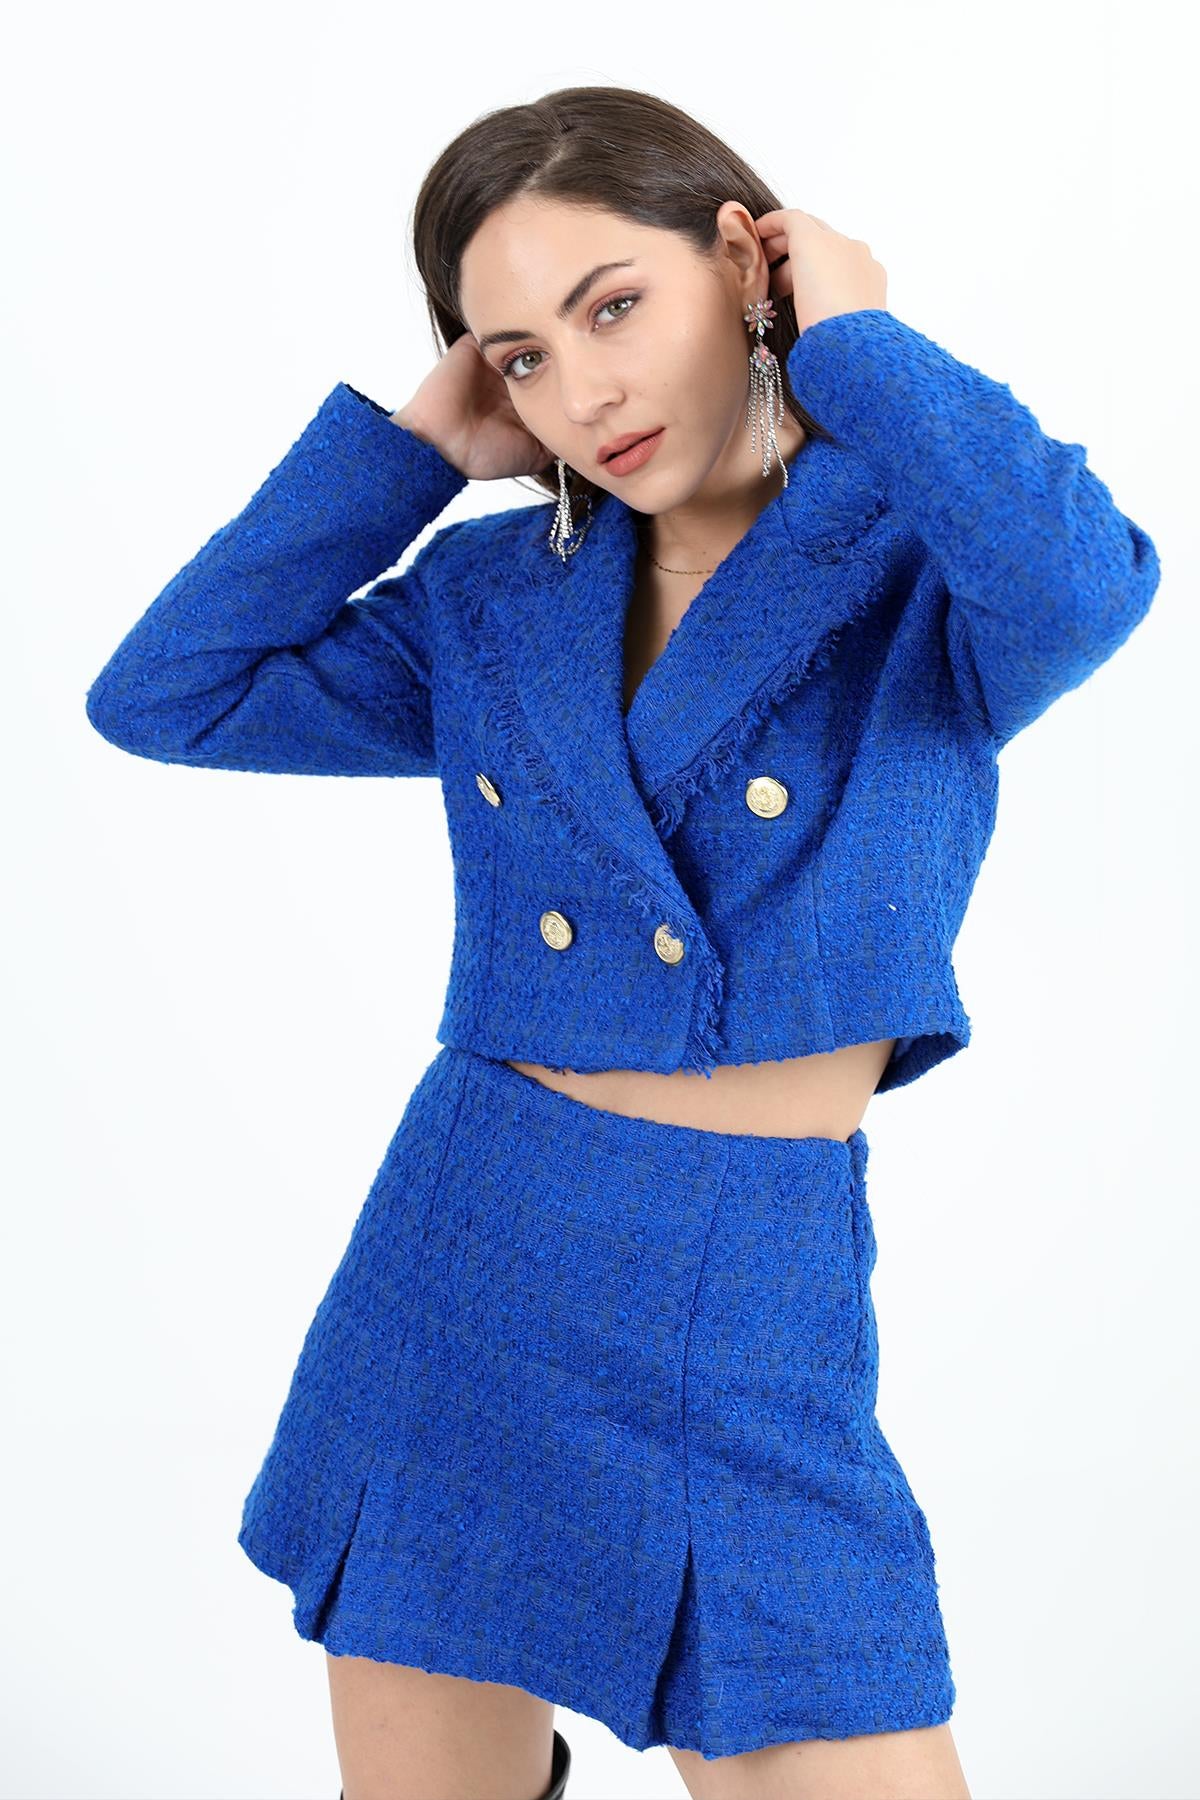 Women's High Waist Side Zipper Chanel Fabric Short Skirt - Sax Blue - STREETMODE™